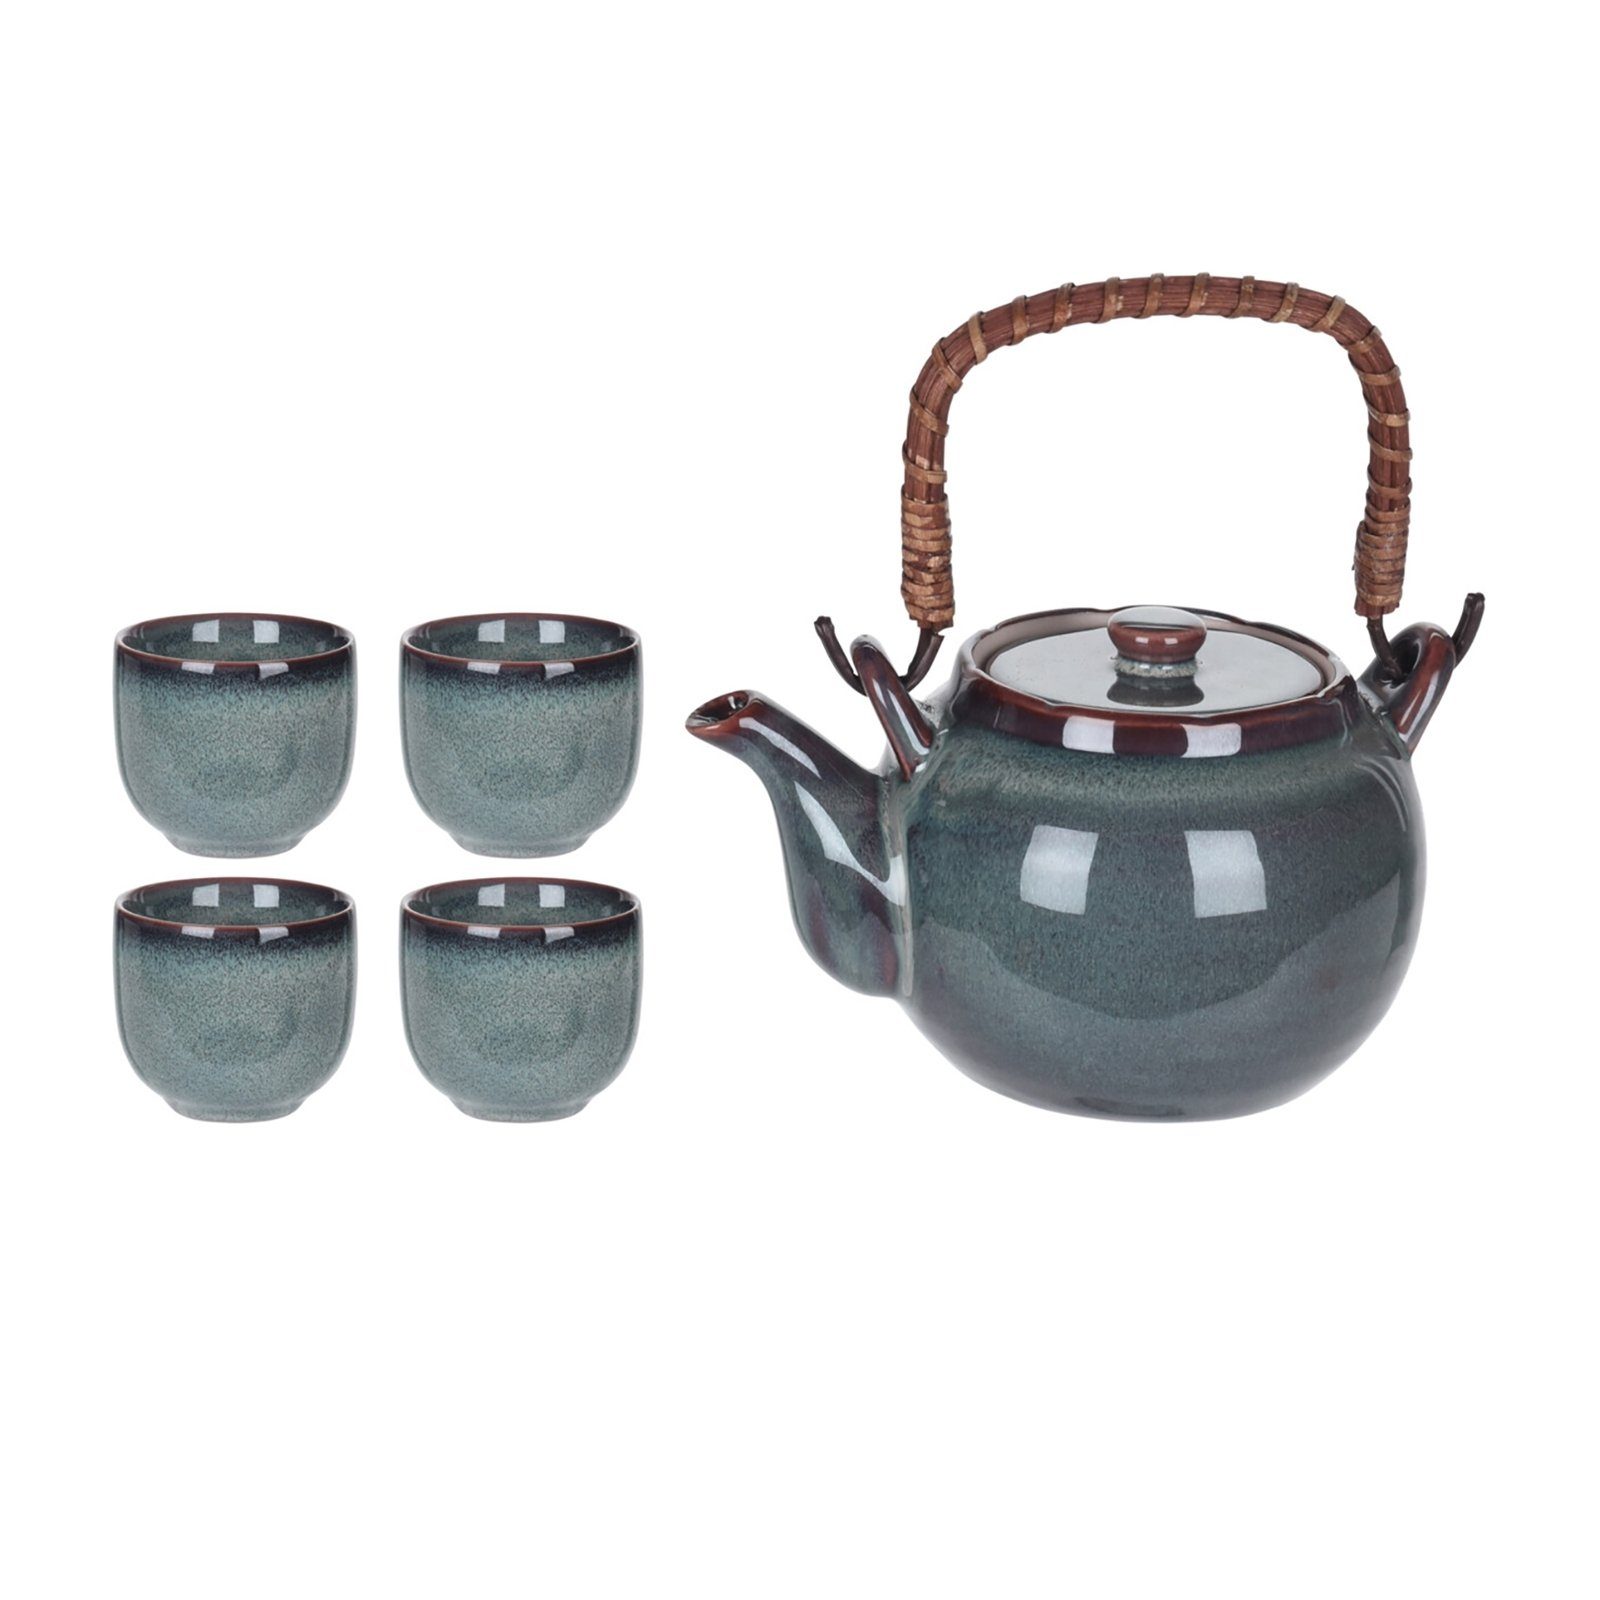 Neuetischkultur Teekanne Teekanne mit Becher 4 Keramik